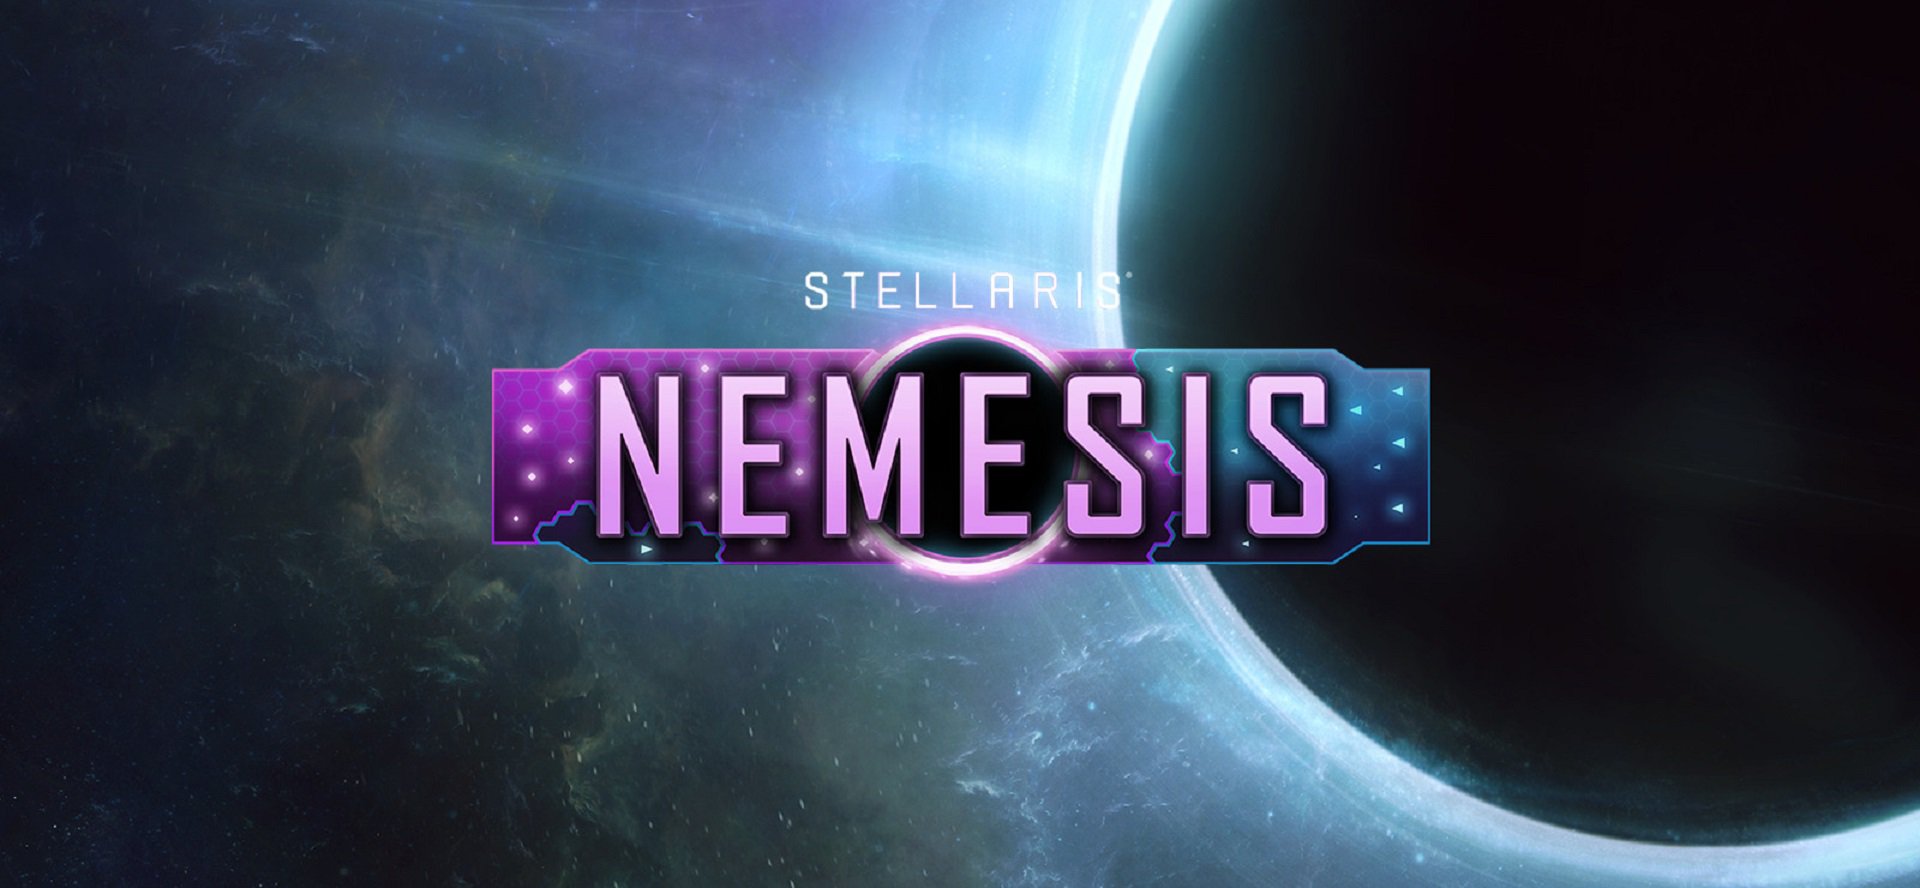 Stellaris Nemesis 8